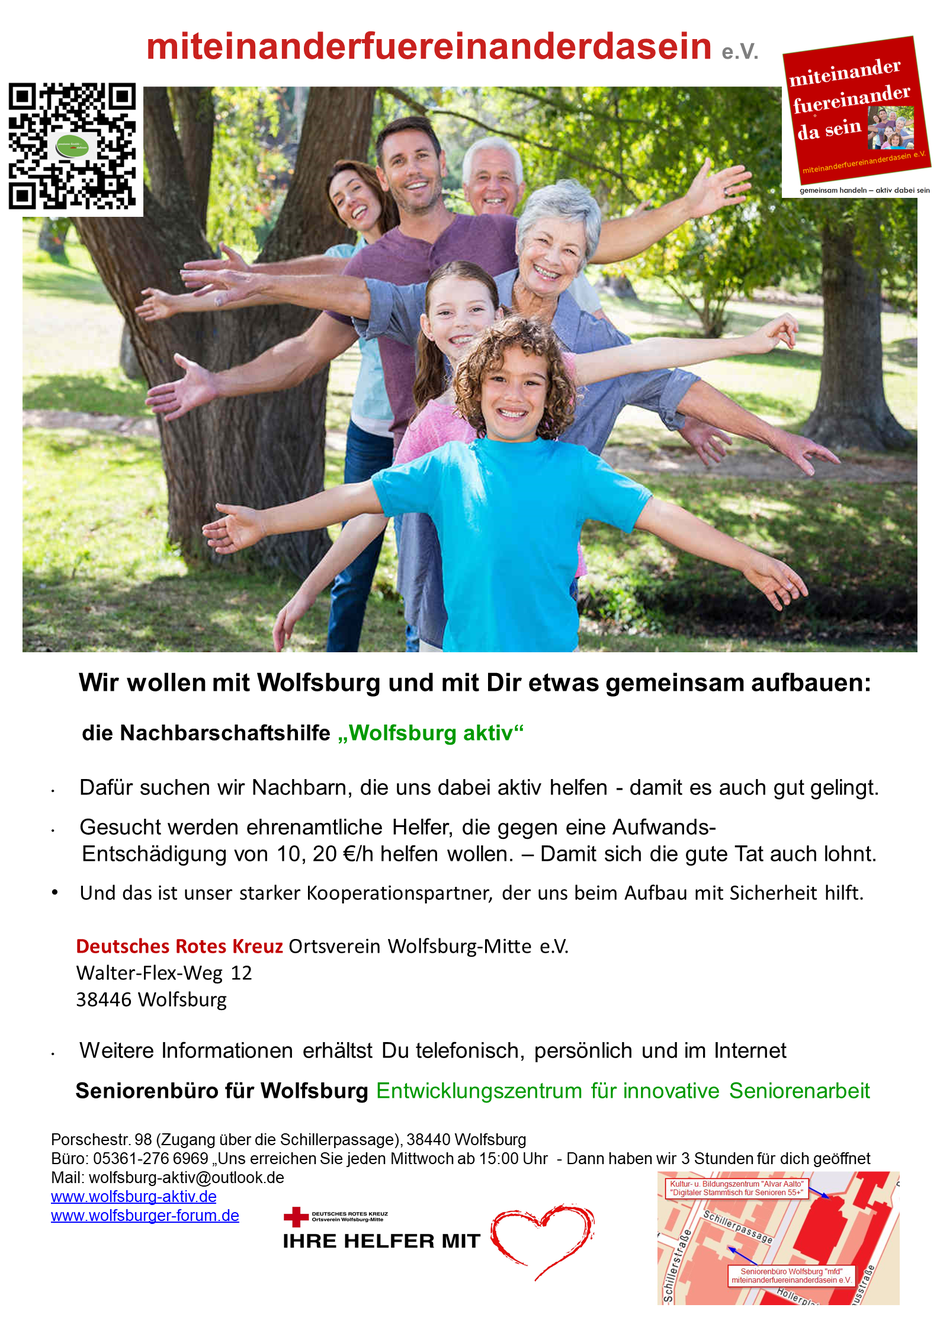 Alltagsbegleitung, Nachbarschaftshilfe, soziale Betreuung, Wolfsburg aktiv, Wolfsburger Forum, rechtliche Betreuung